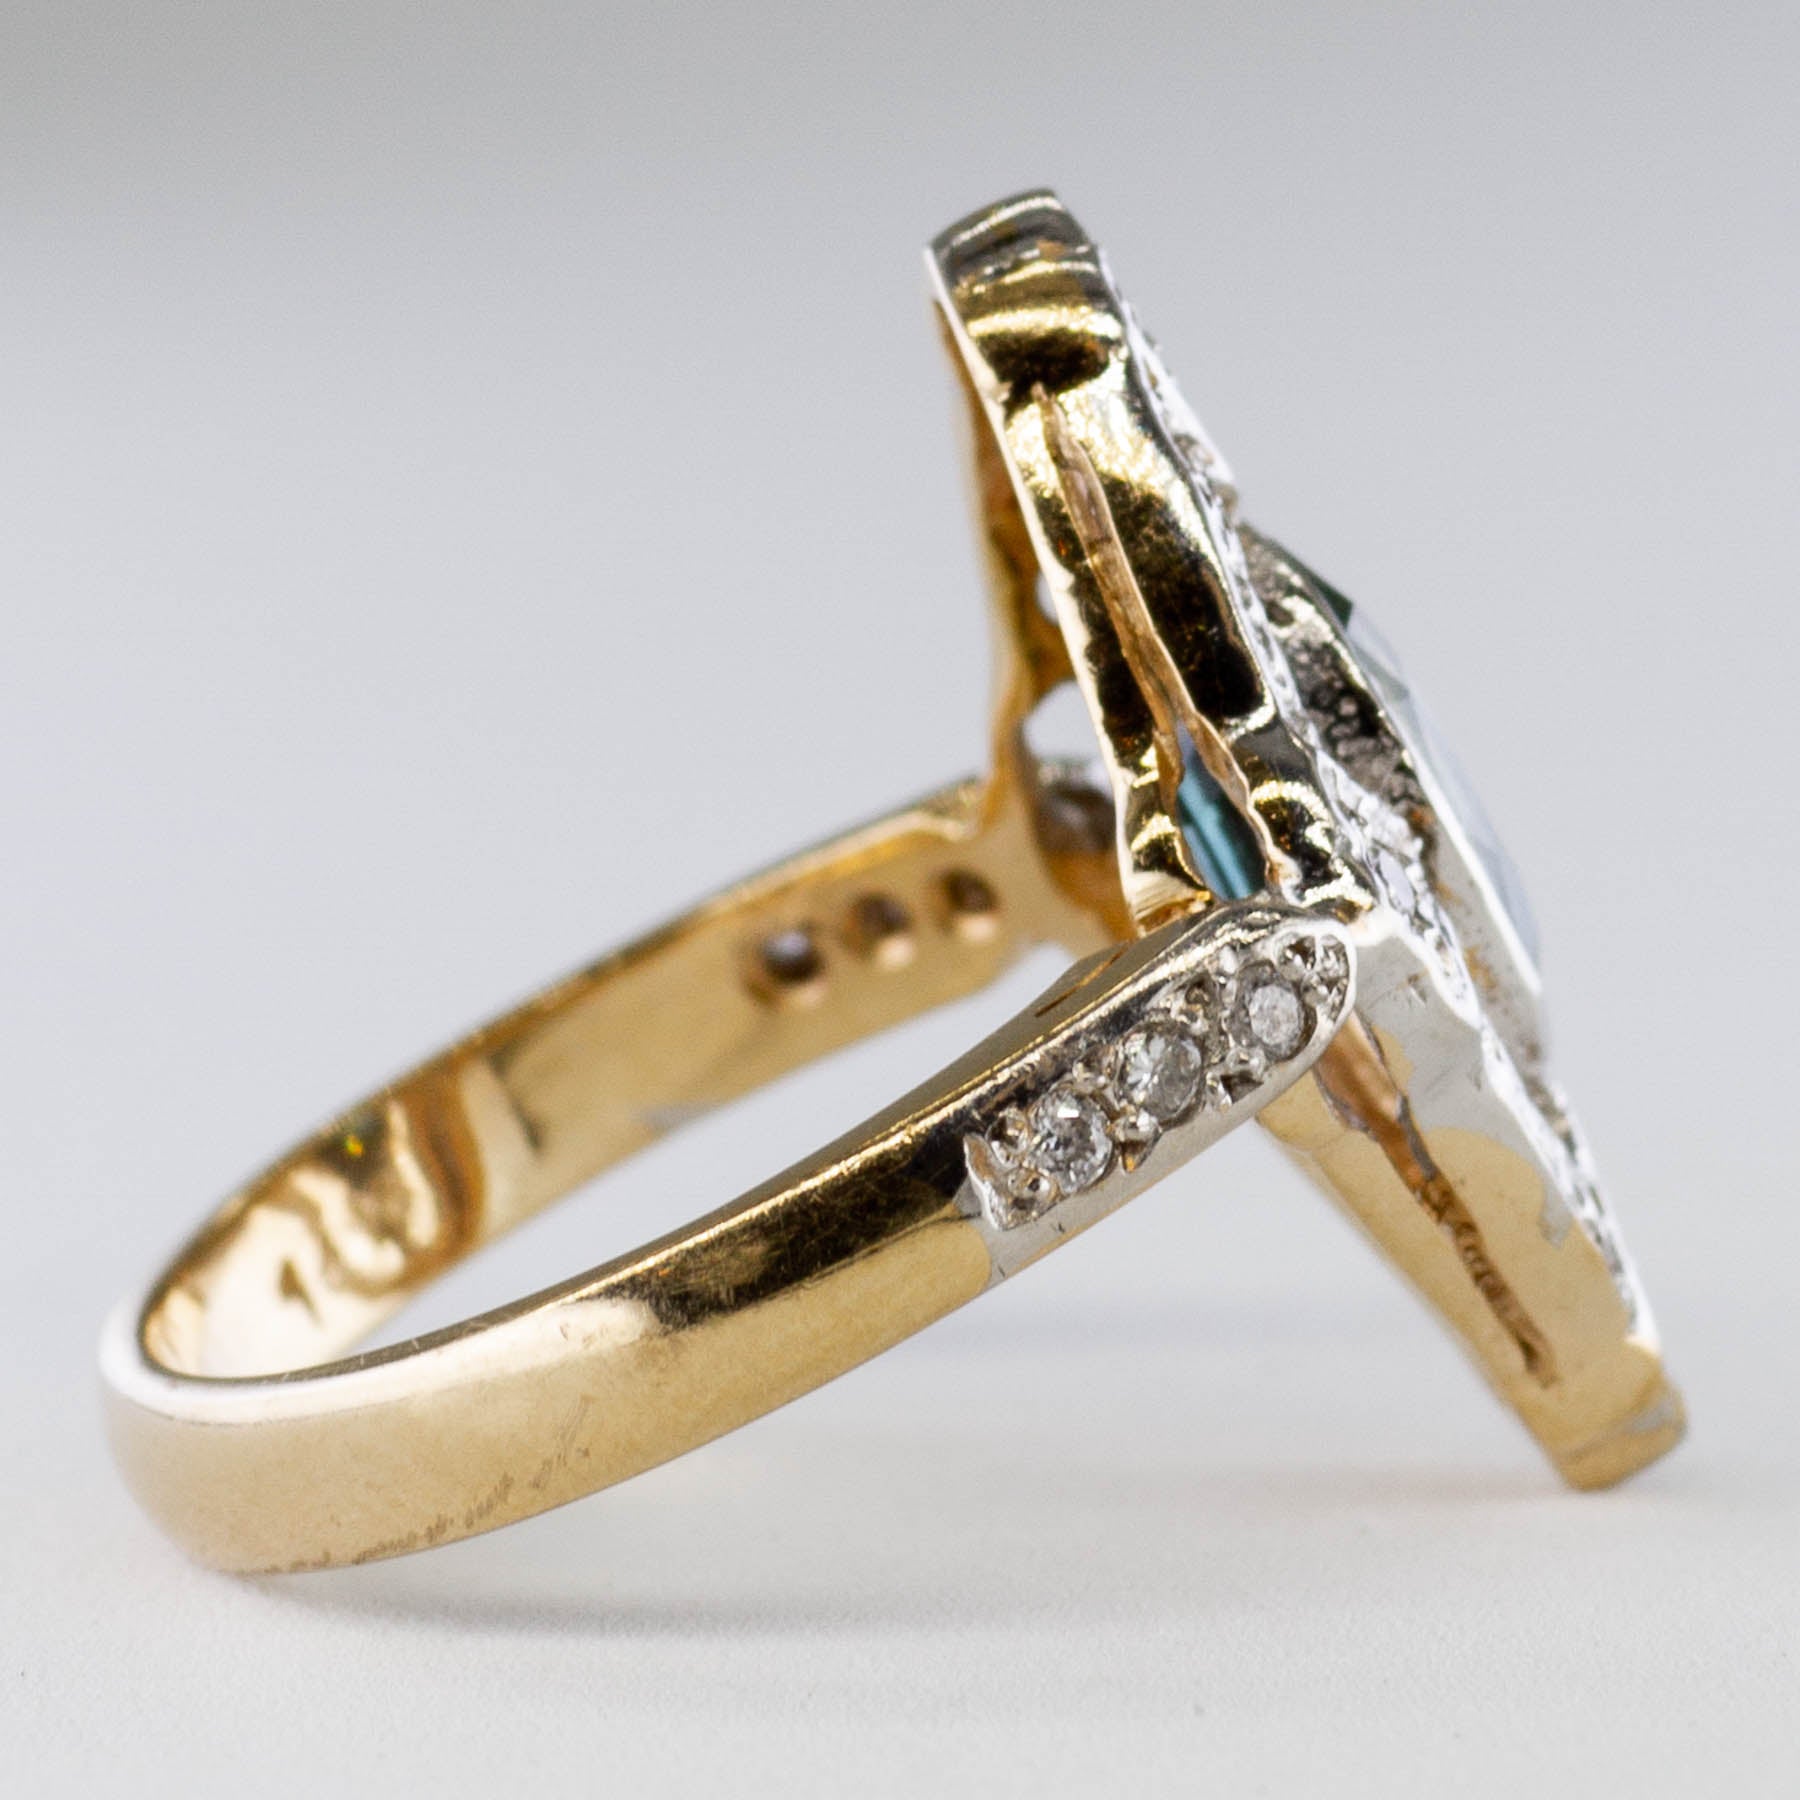 Art Deco Style Blue Sapphire & Diamond Ring | 1.75ct, 0.14ctw | SZ 5 |